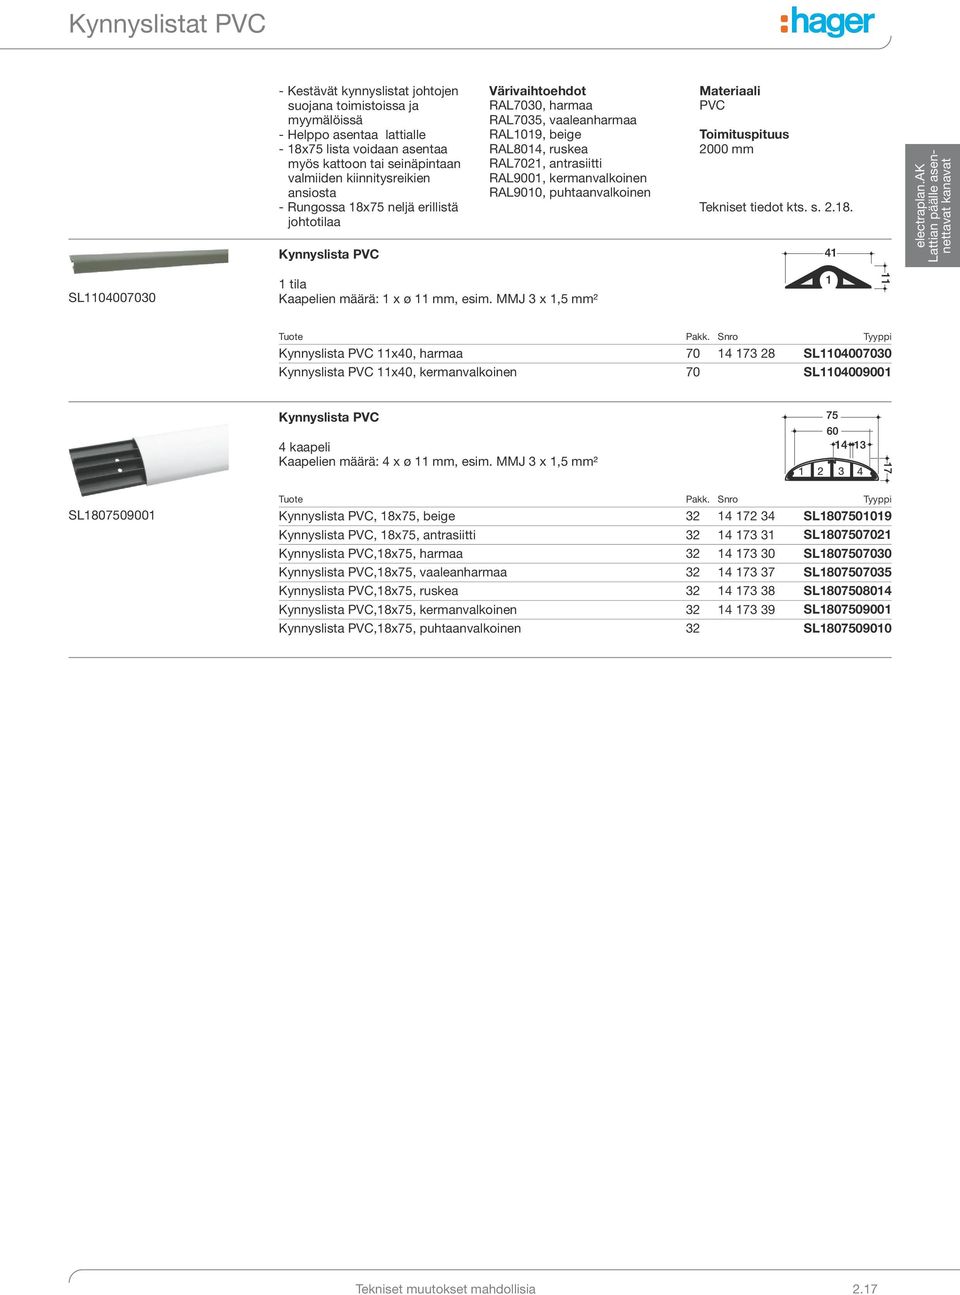 kermanvalkoinen RAL9010, puhtaanvalkoinen Materiaali PVC Toimituspituus 2000 mm Tekniset tiedot kts. s. 2.18. SL1104007030 1 tila Kaapelien määrä: 1 x ø 11 mm, esim.